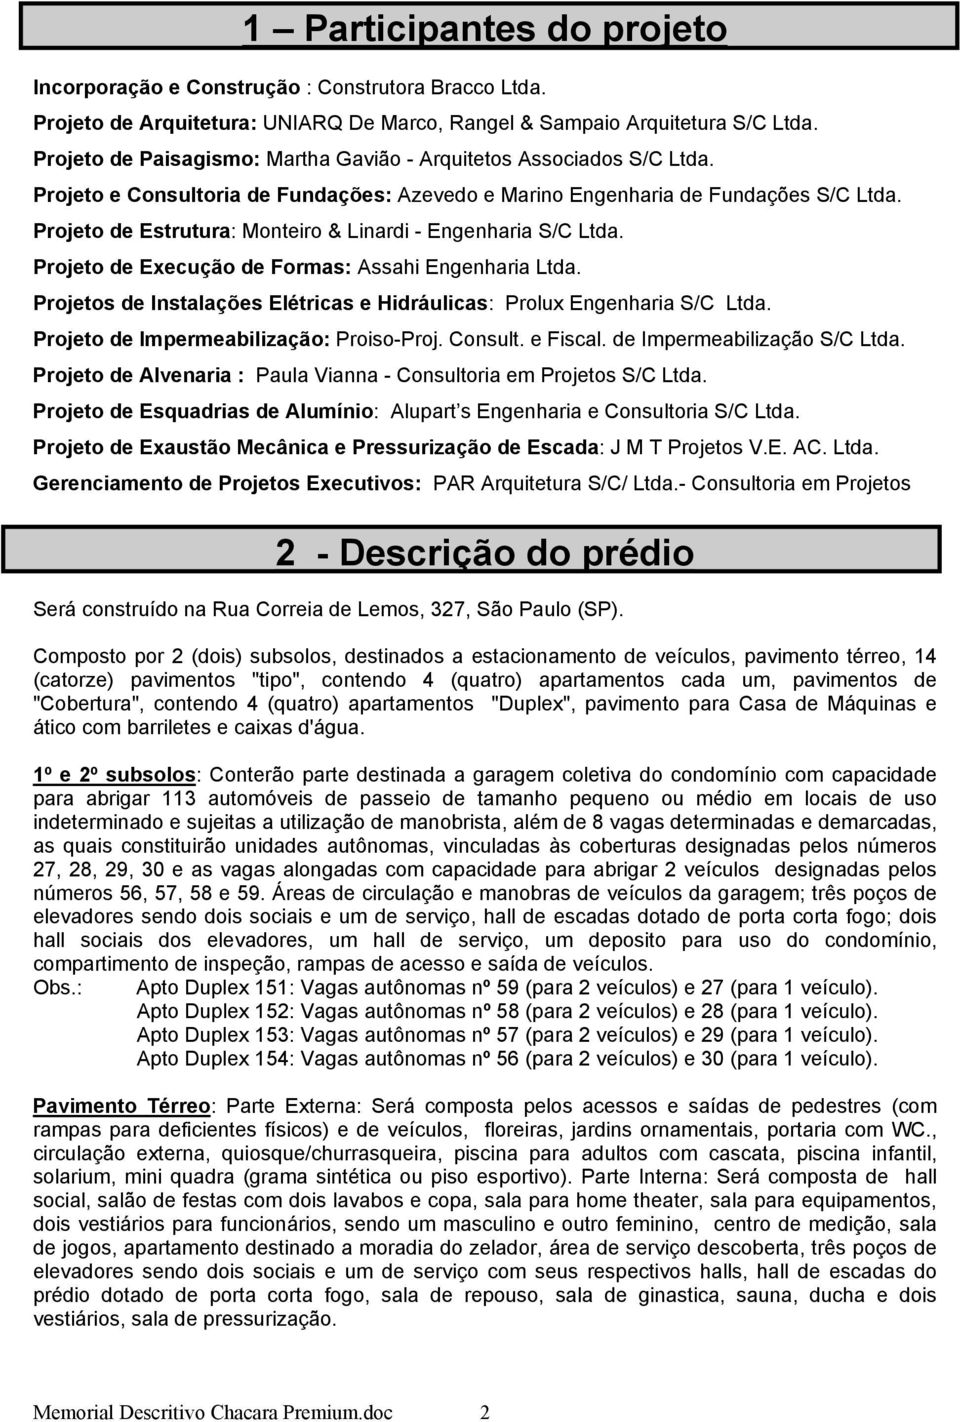 Projeto de Estrutura: Monteiro & Linardi - Engenharia S/C Ltda. Projeto de Execução de Formas: Assahi Engenharia Ltda. Projetos de Instalações Elétricas e Hidráulicas: Prolux Engenharia S/C Ltda.